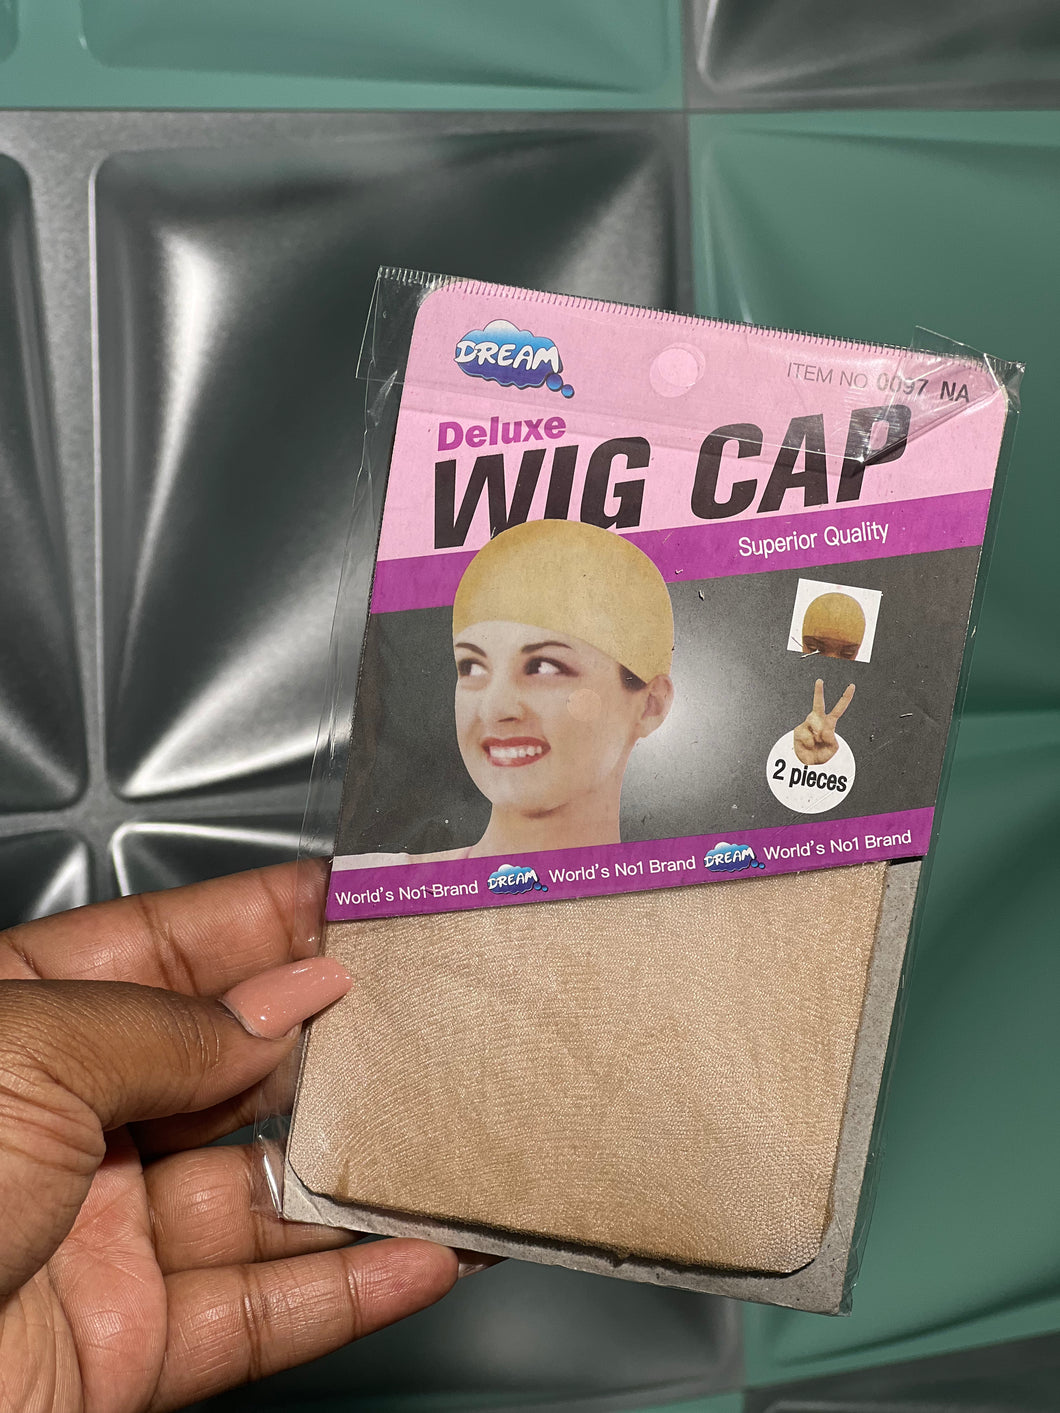 Wig Cap 